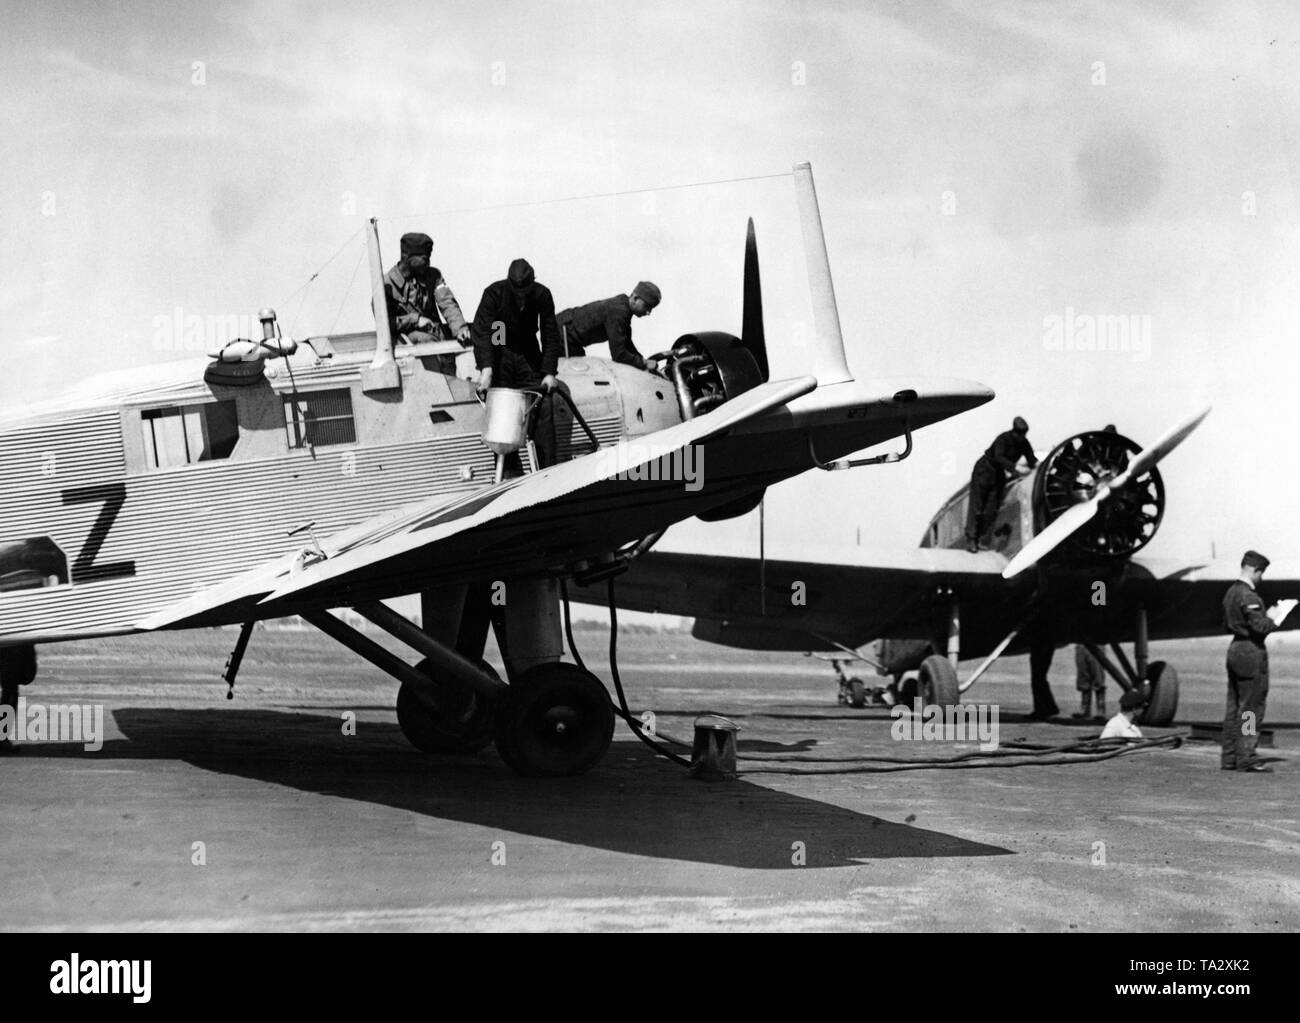 Les élèves-pilotes et le personnel au sol de la Luftwaffe pendant le ravitaillement d'un Junkers W 34, ce type d'avion a été fréquemment utilisé par la Luftwaffe en tant que moteur de l'école. Banque D'Images